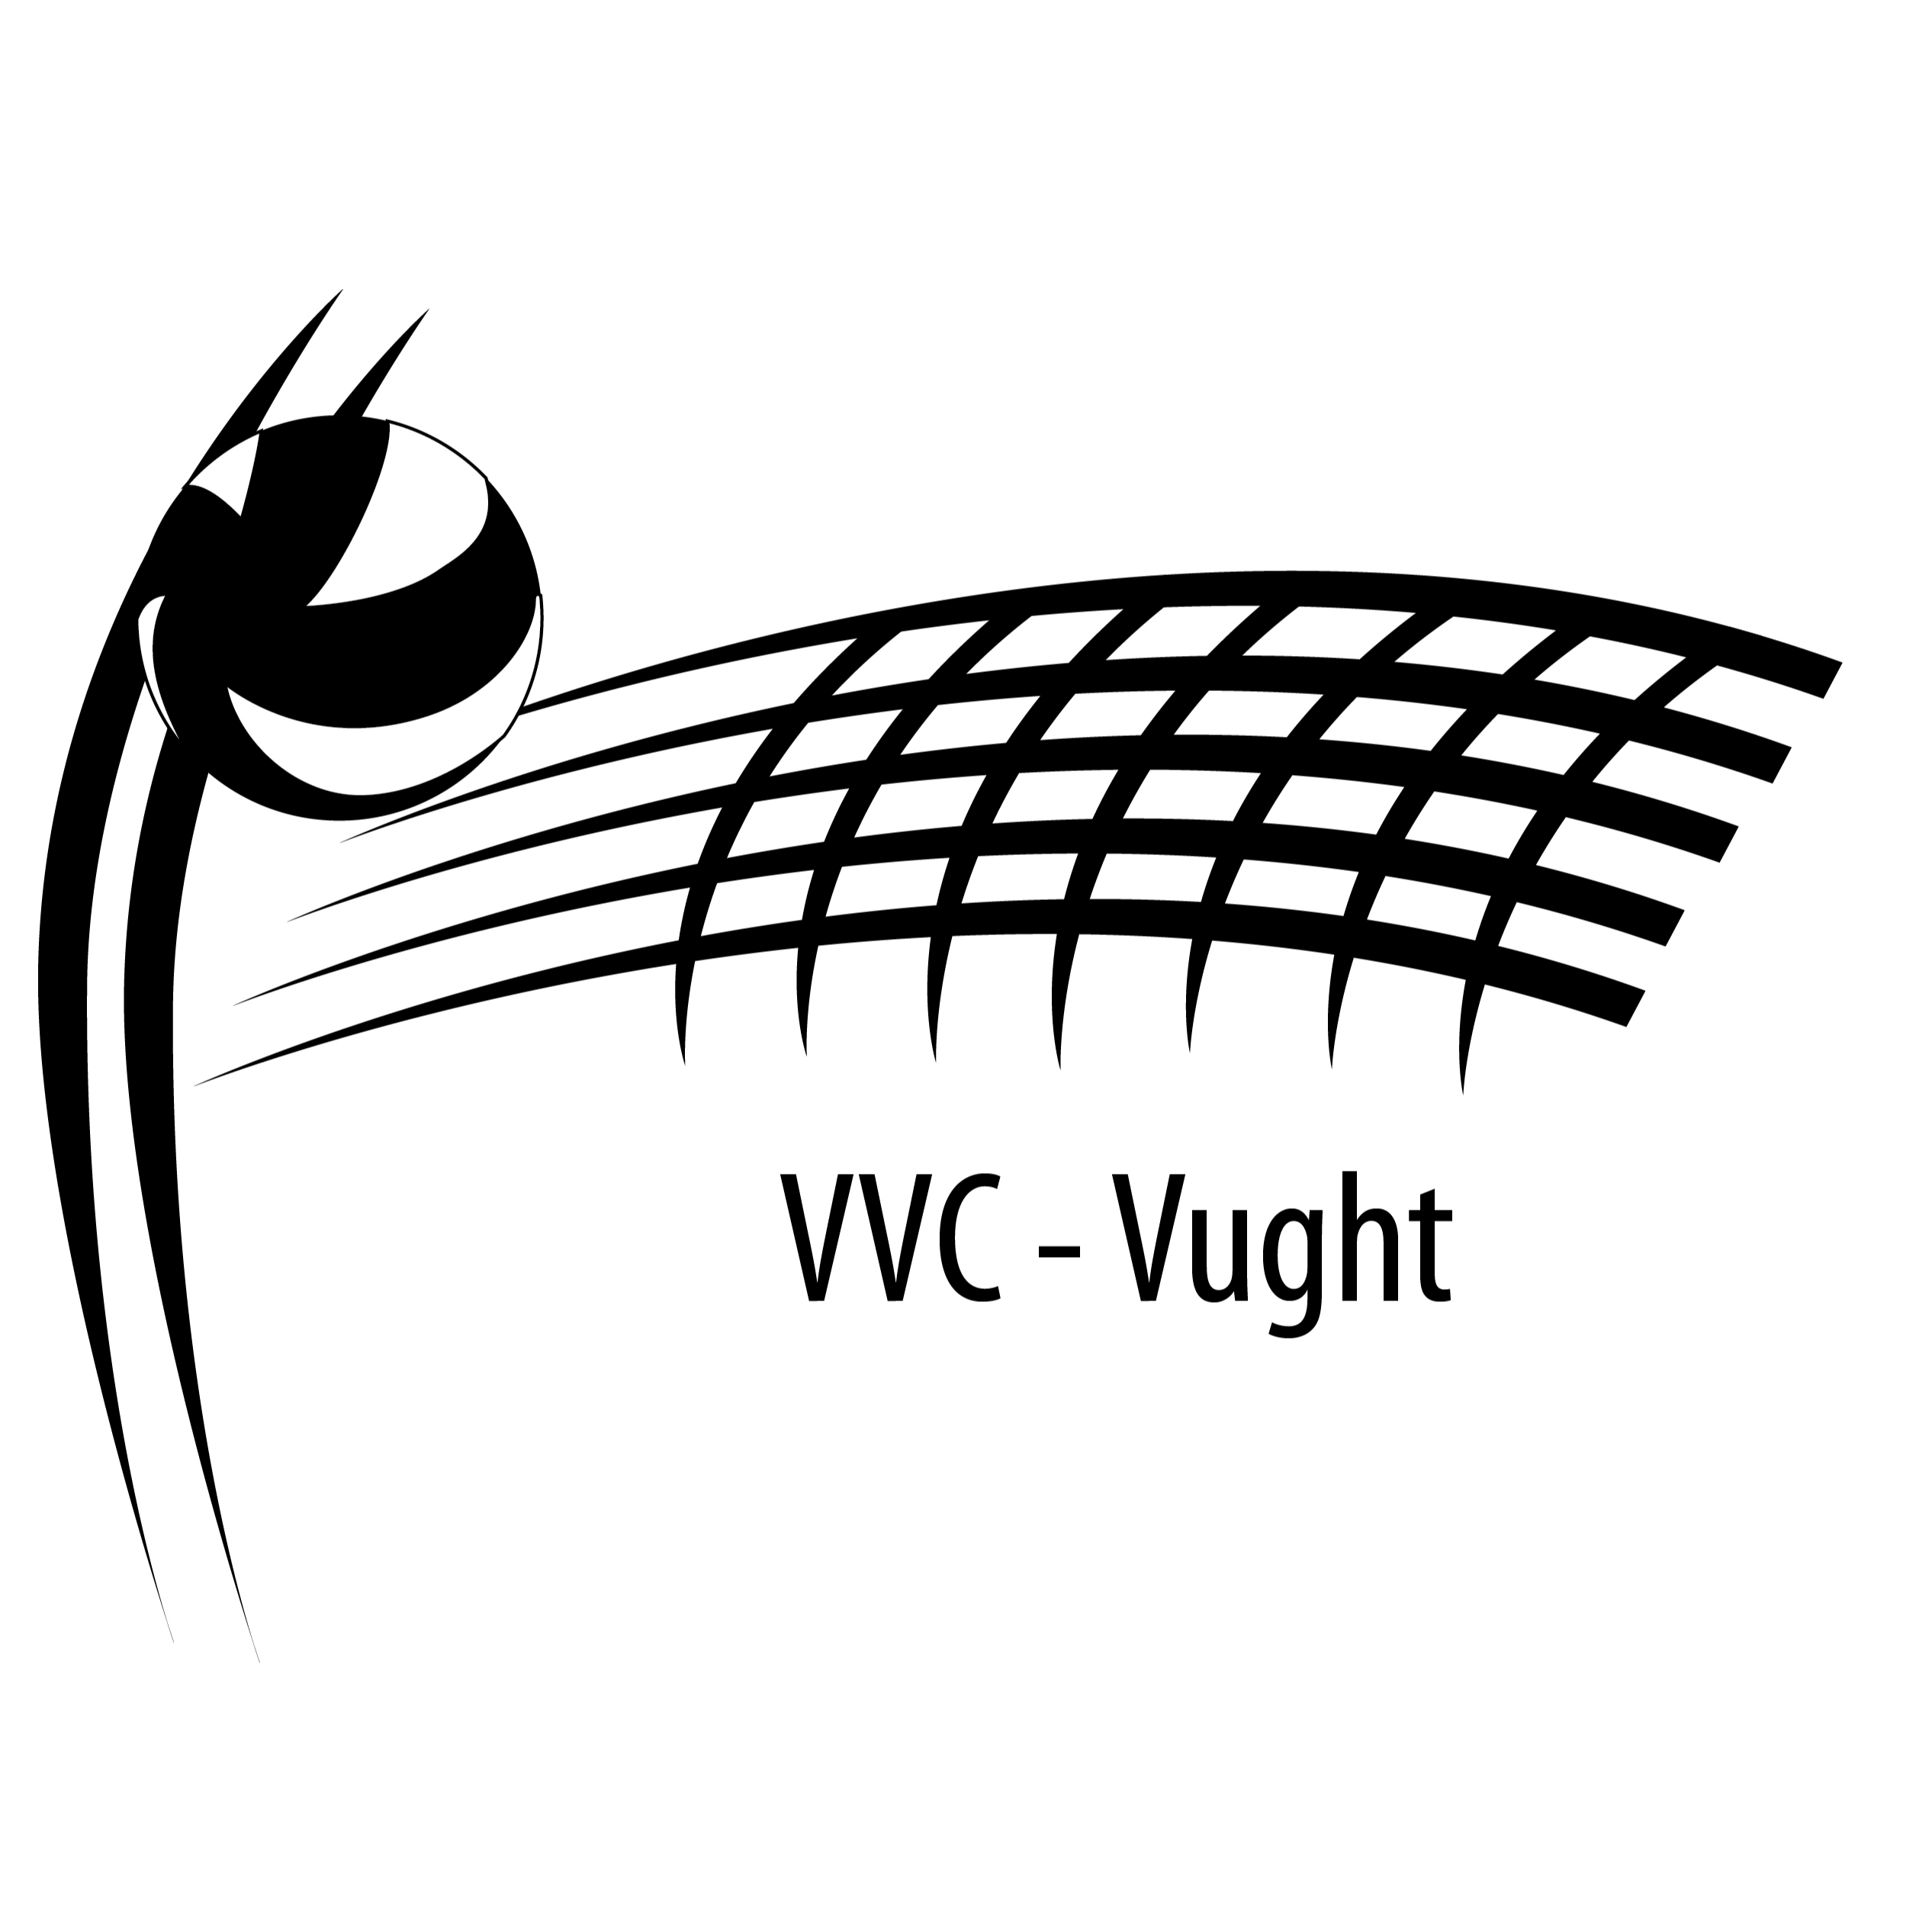 VVC-Vught